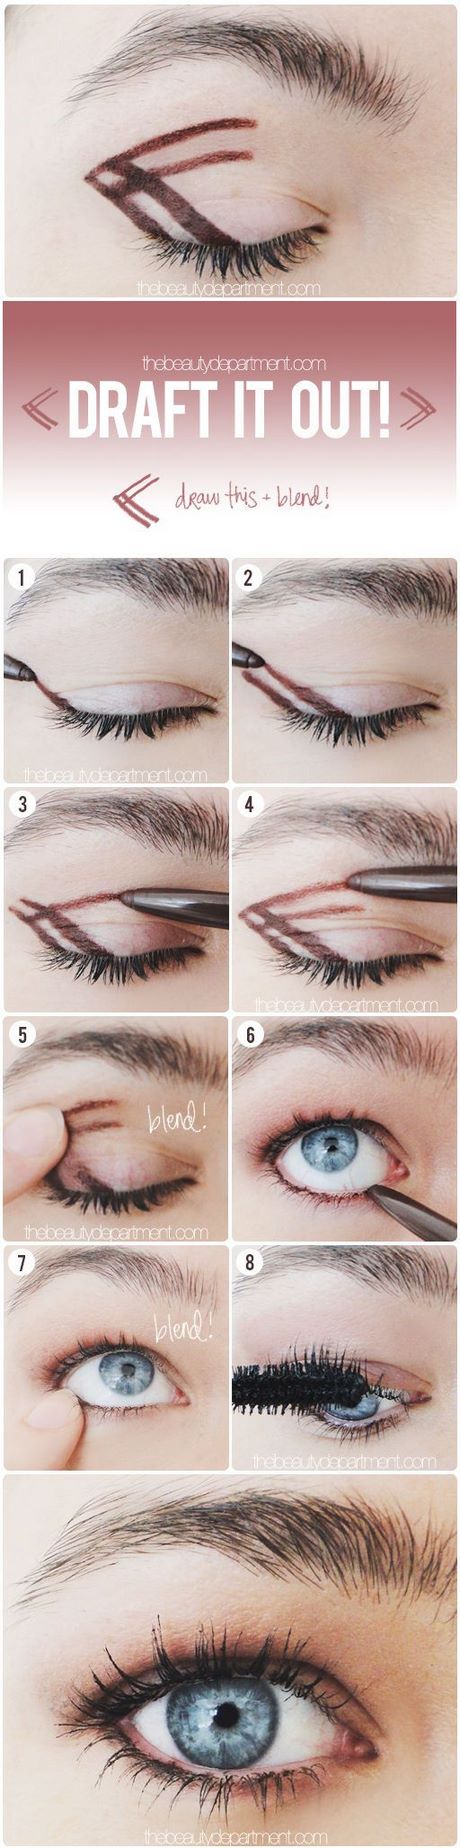 Smokey eye make-up tips